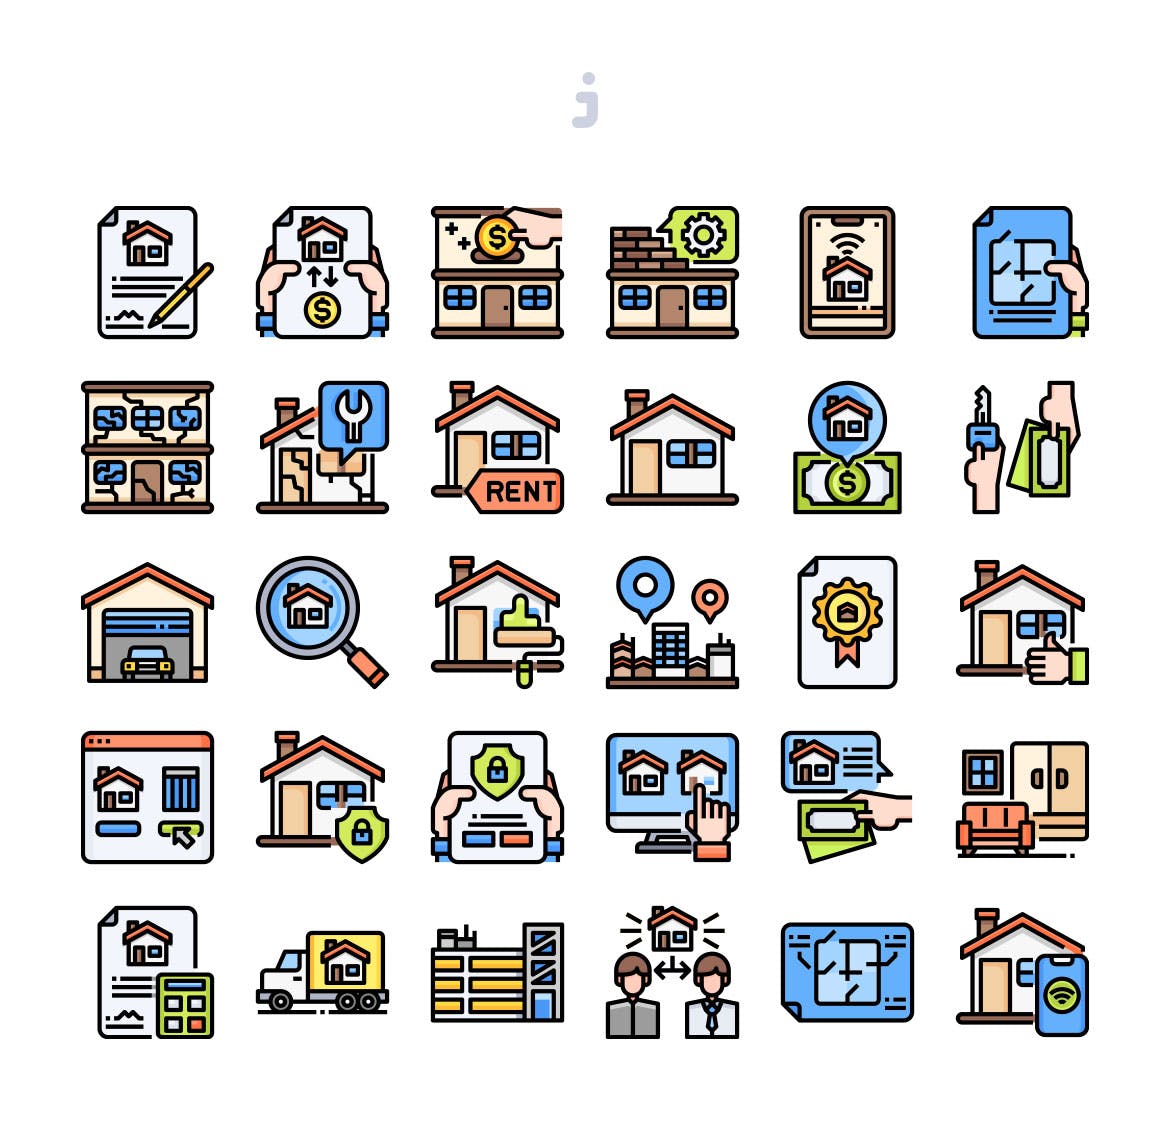 30个房地产主题矢量图标 30 Real Estate Icons插图(1)